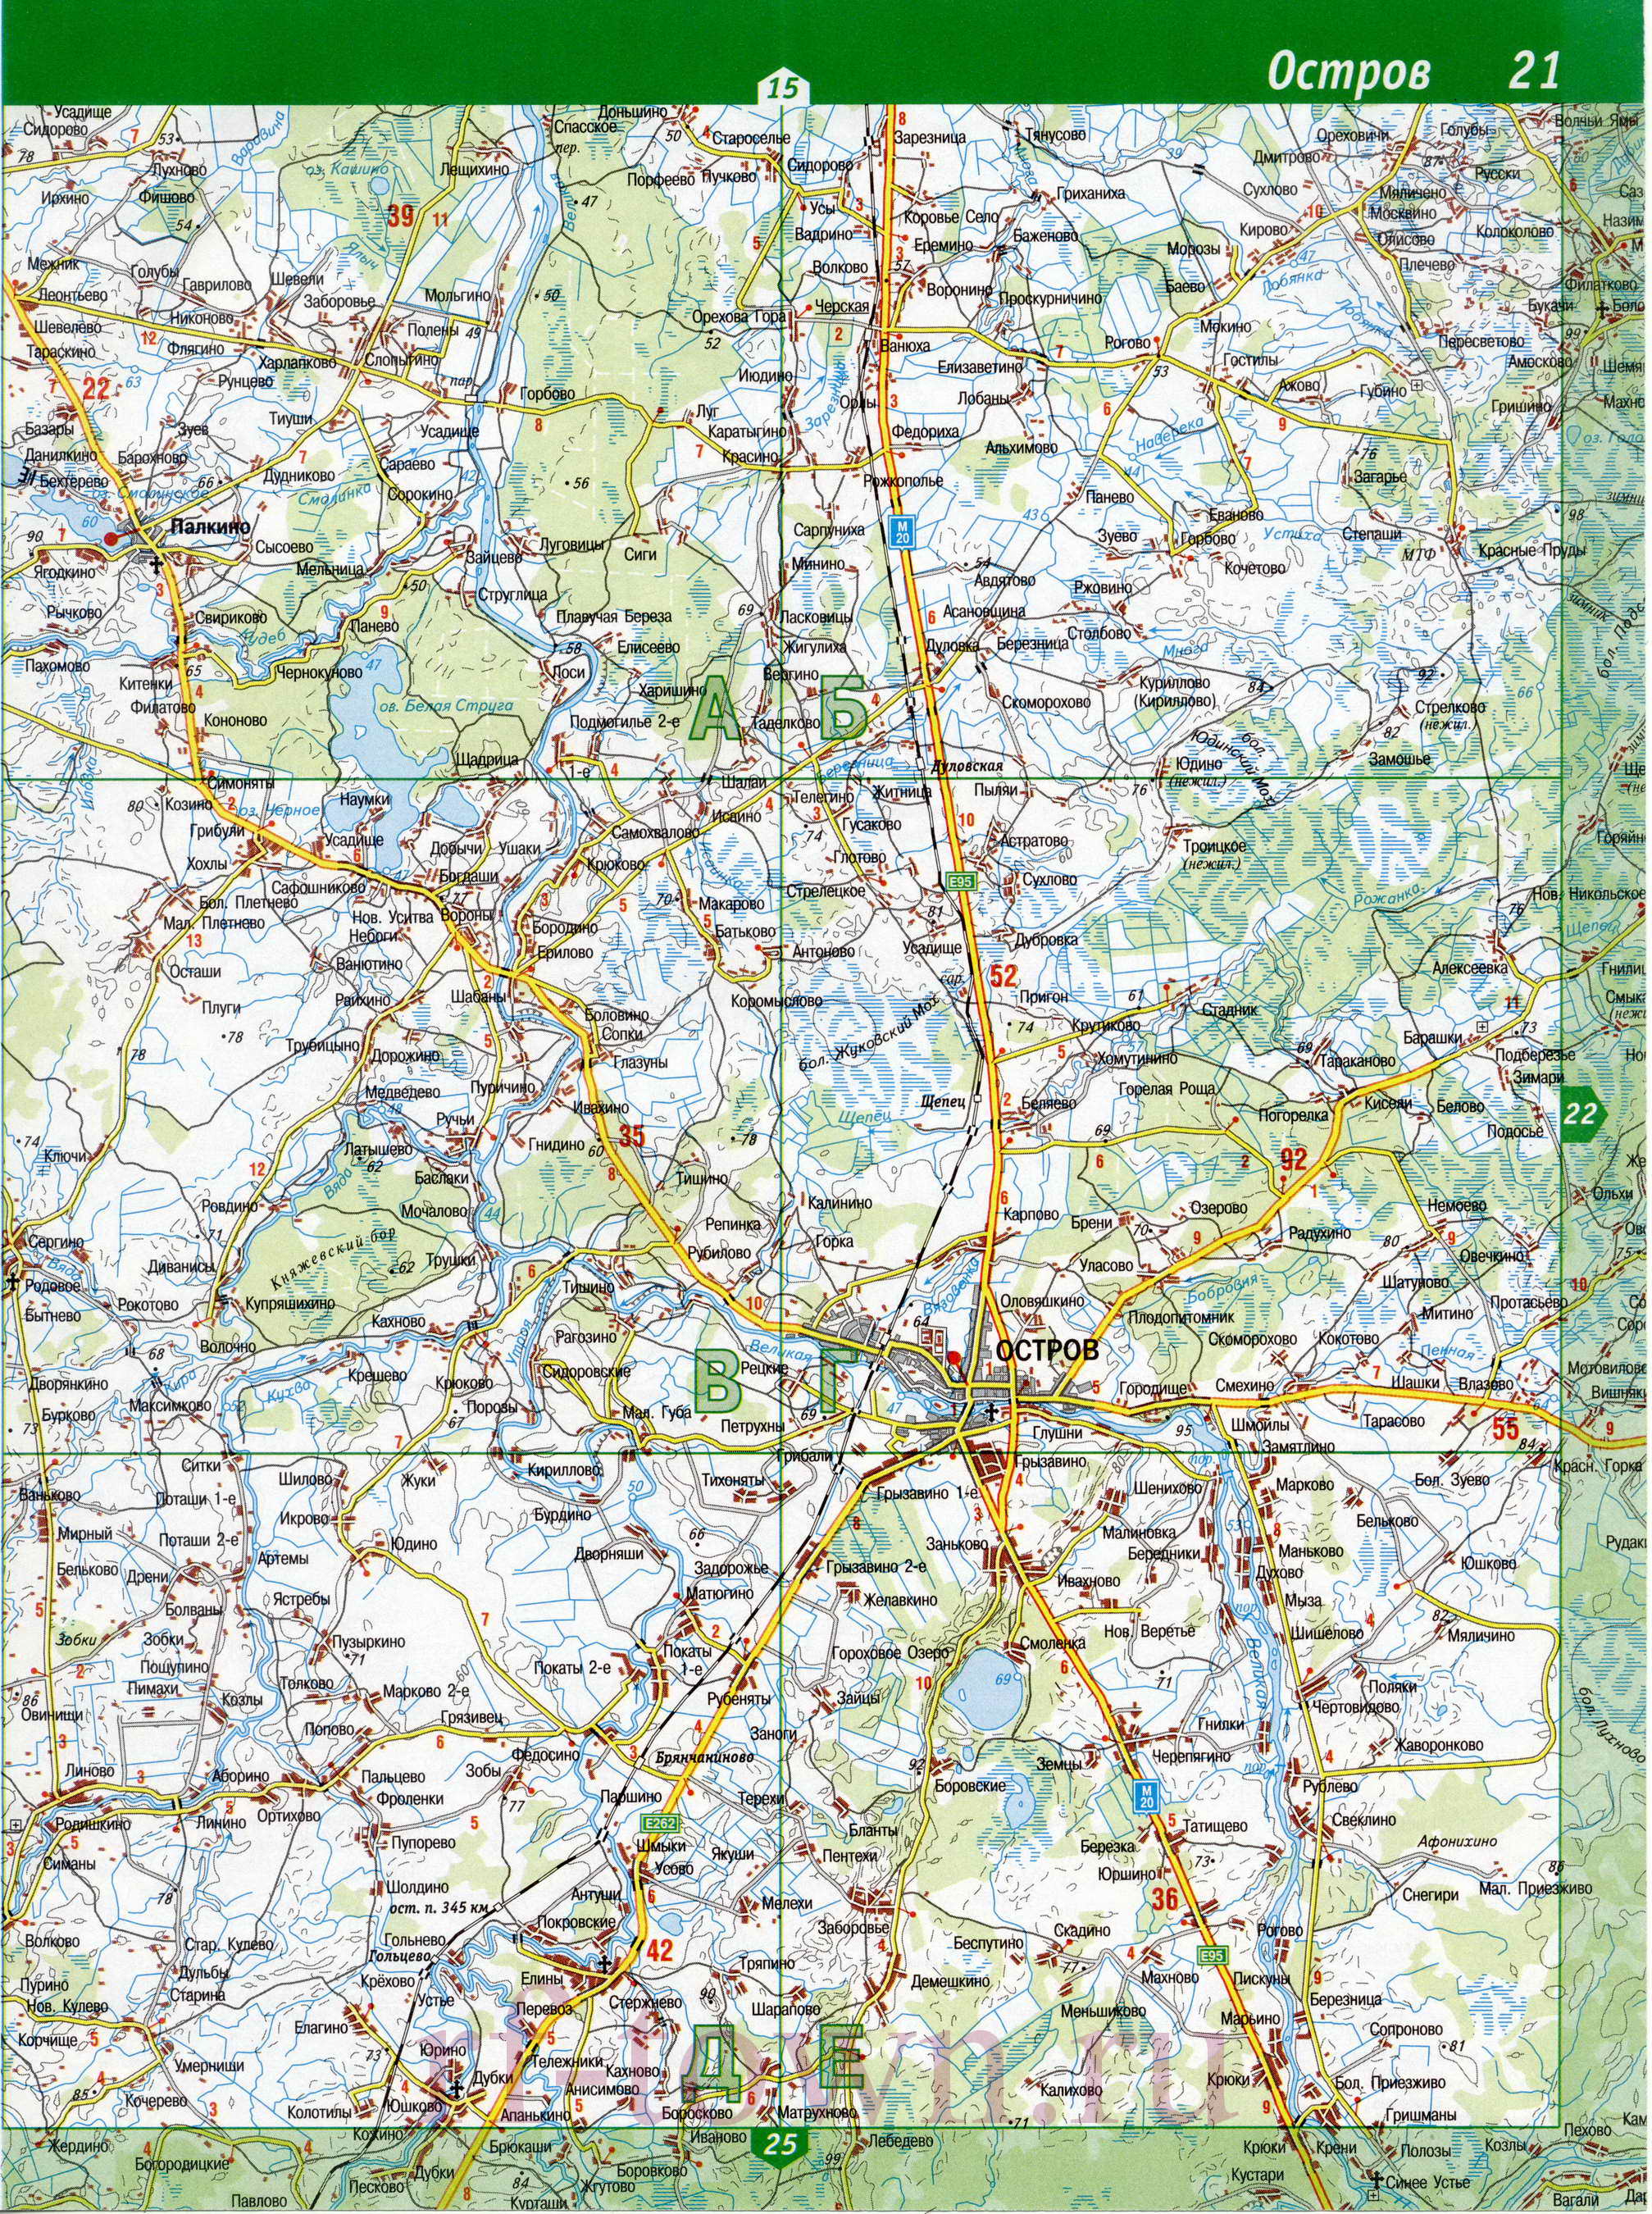 Карта Печорского района. Подробная топографическая карта - Печорский район Псковской области , B1 - 